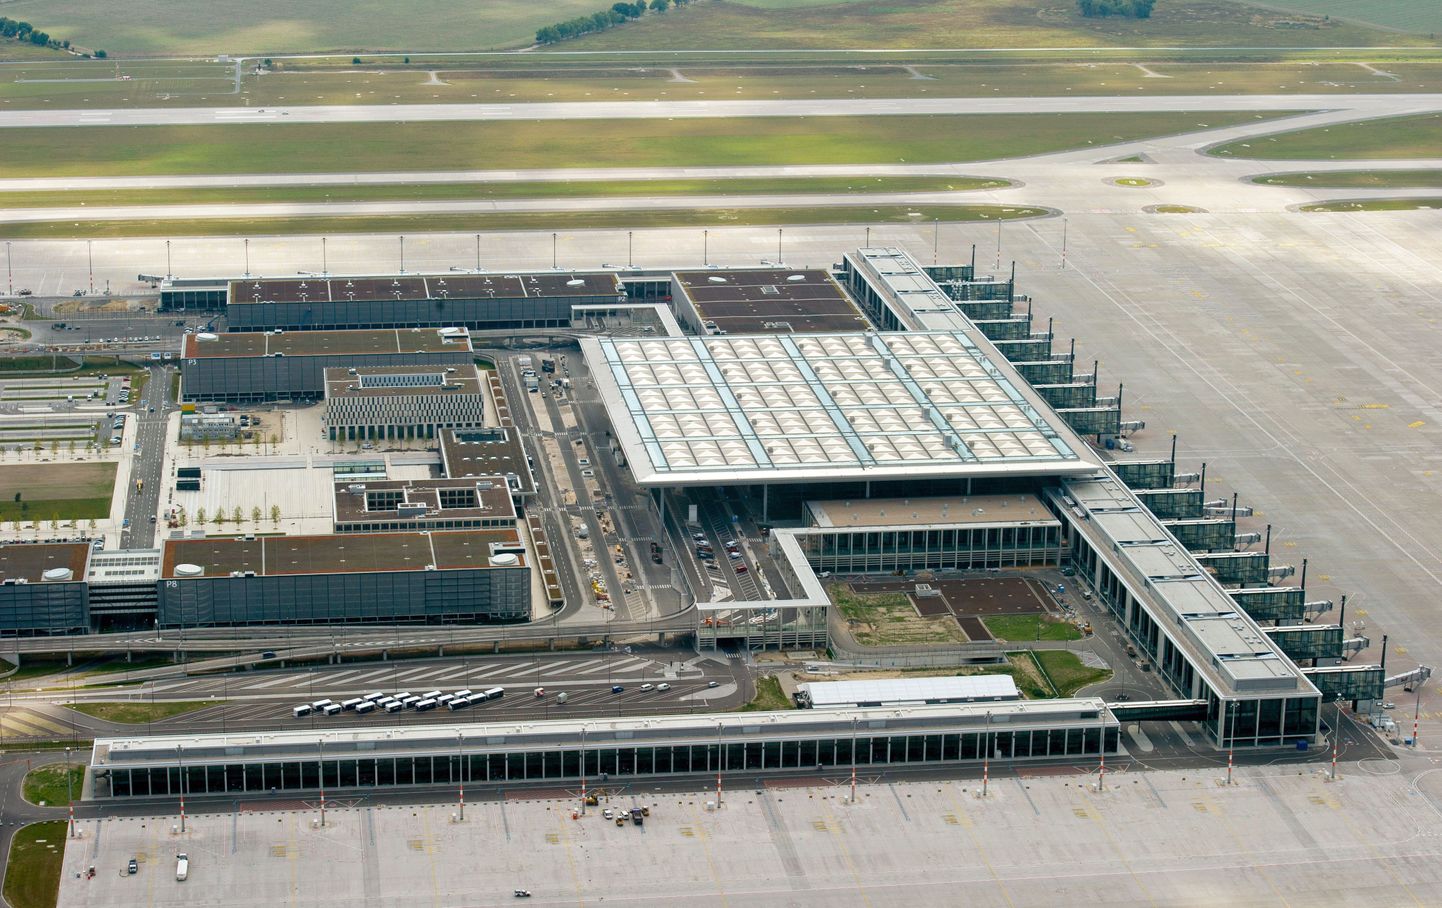 Berliini Brandenburg rahvusvaheline lennujaam 2012. aastal, mil ta oleks pidanud avatama.